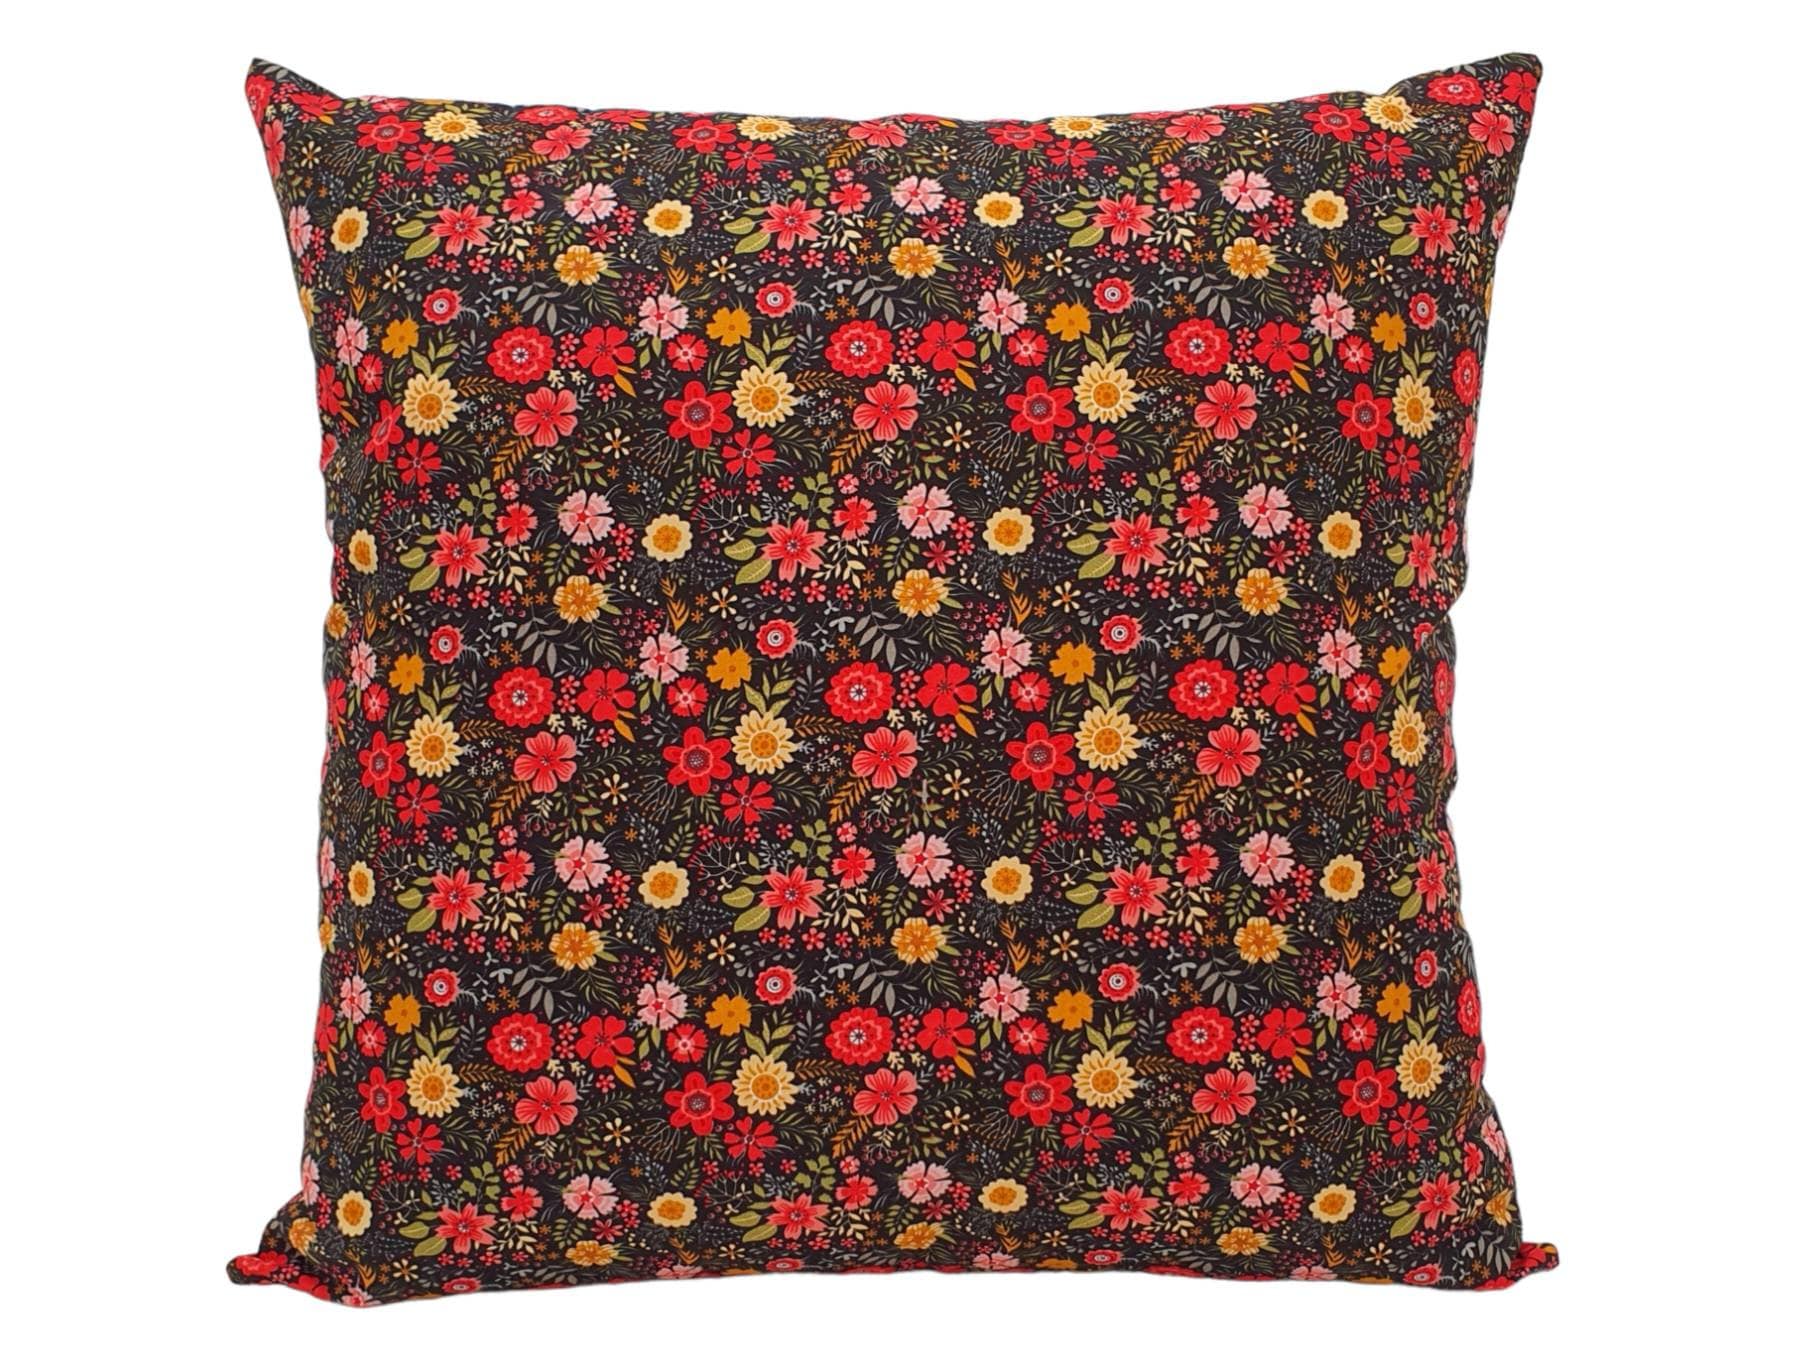 Ditsy Daisy Wildflowers Handmade Zipped Cushion Cover